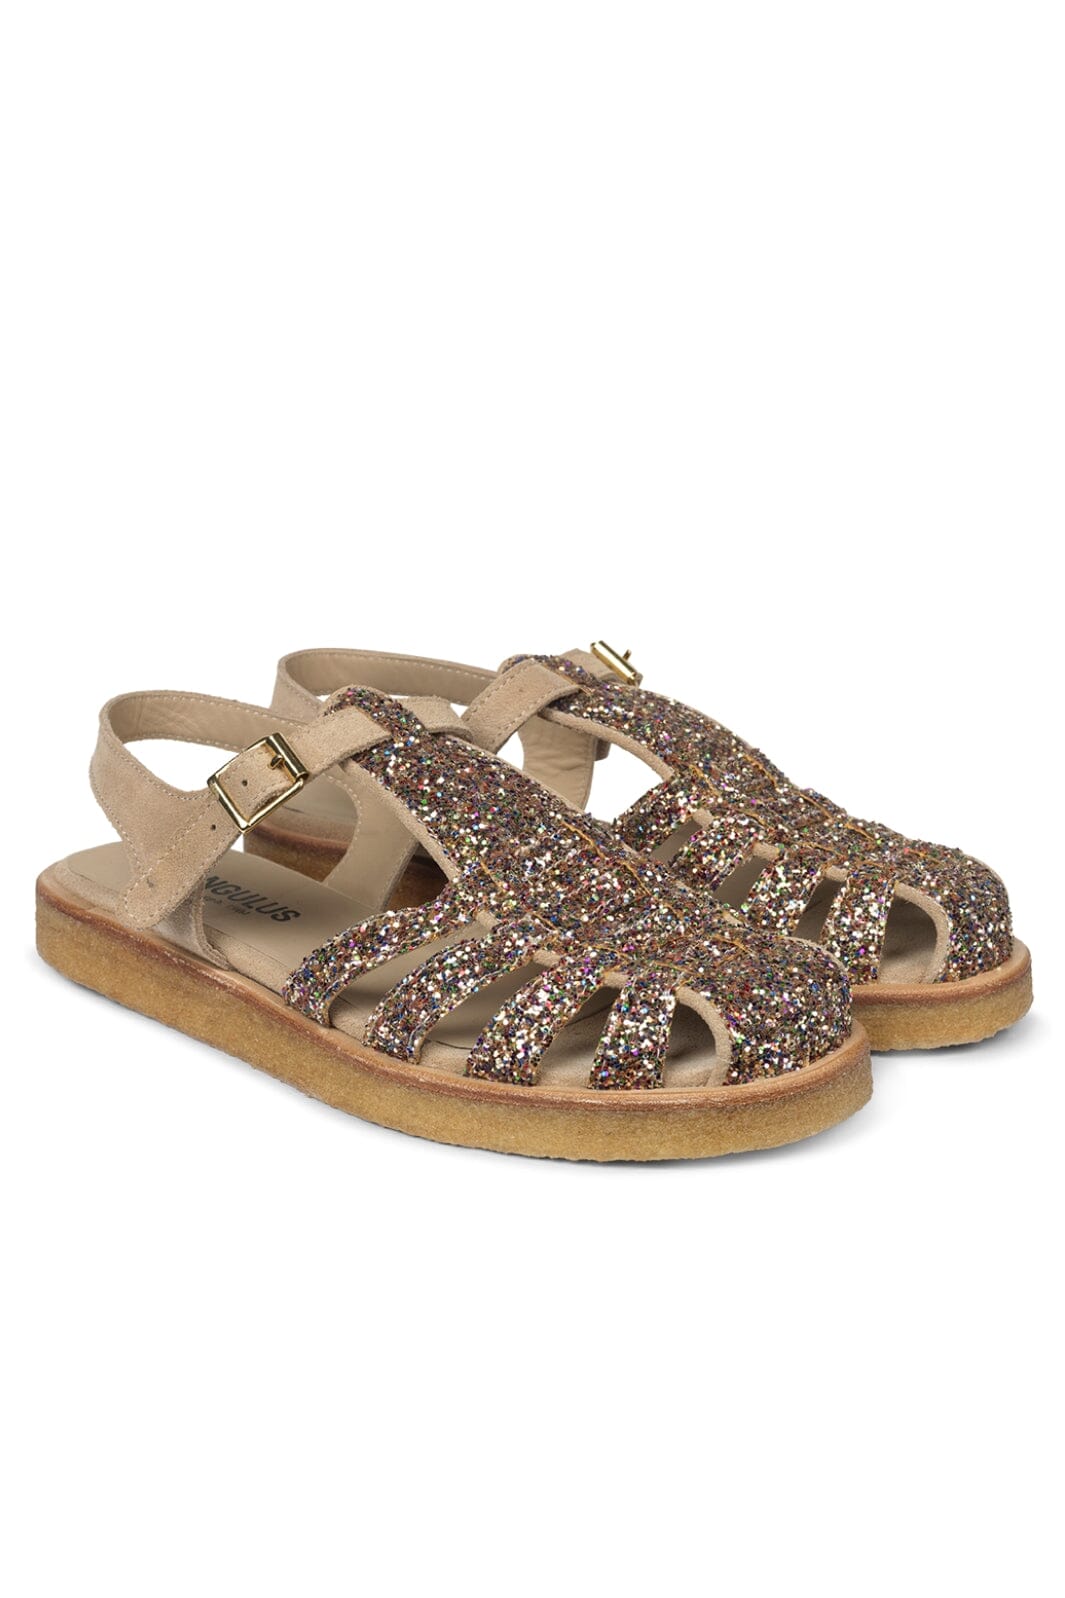 Angulus - Klassisk Fisherman’s sandal med funklende glitter - 2488/1149 Multi Glitter/Sand Sandaler 